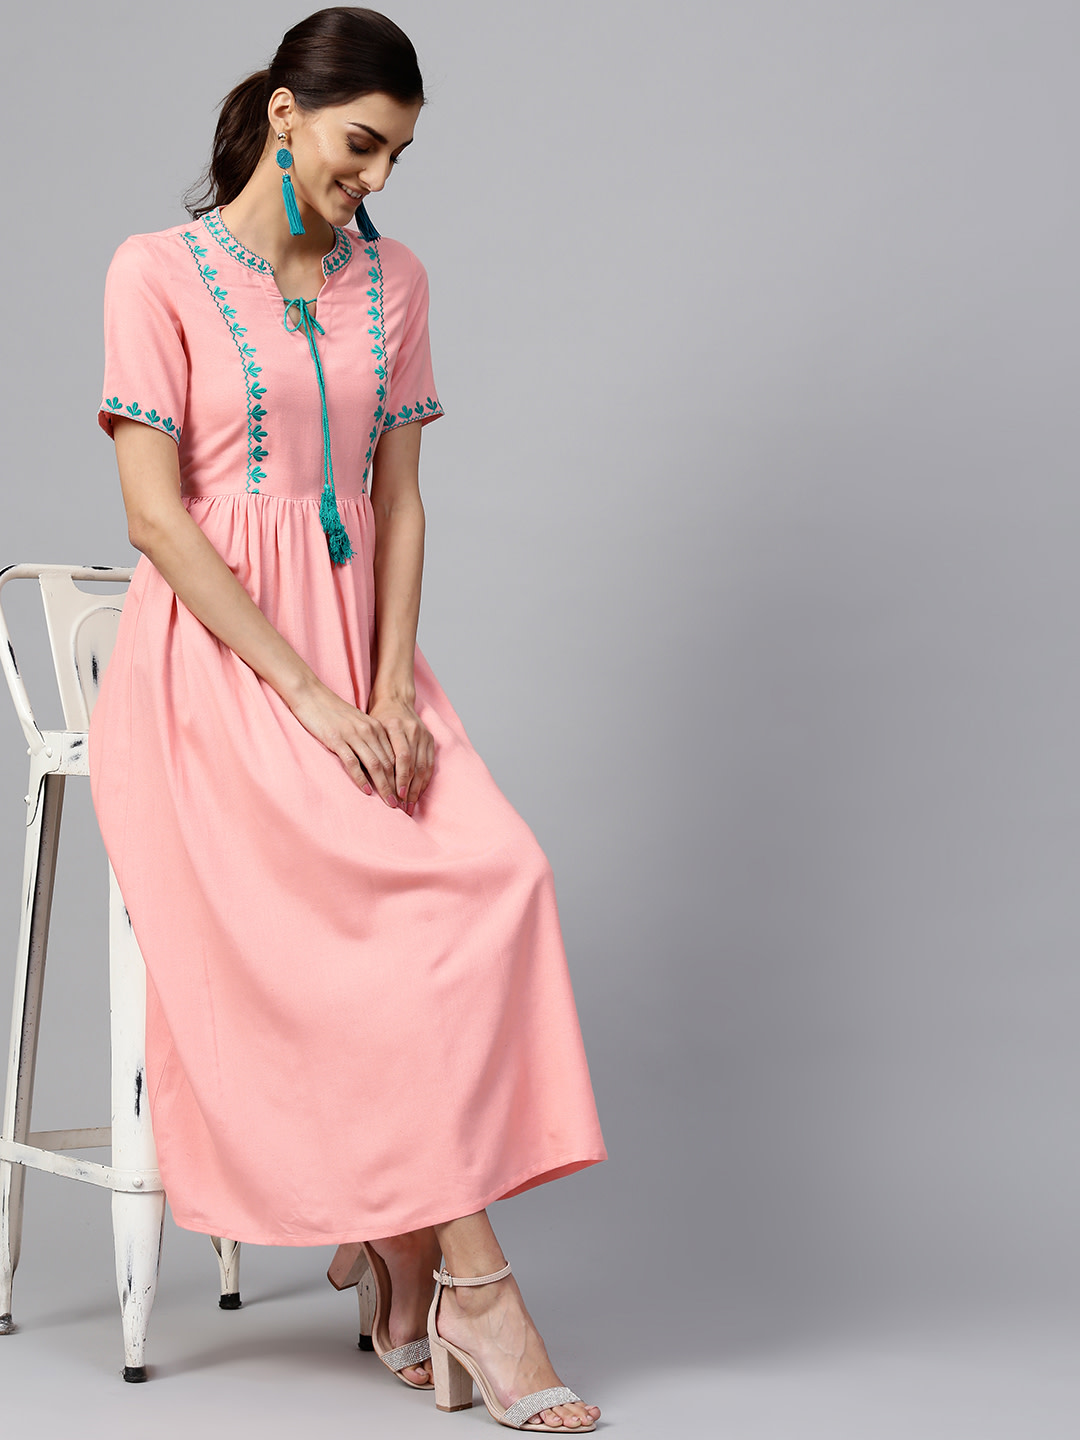 Georgette Midi Women Pink Dress, Size: Medium at Rs 270 in New Delhi | ID:  2852100980962